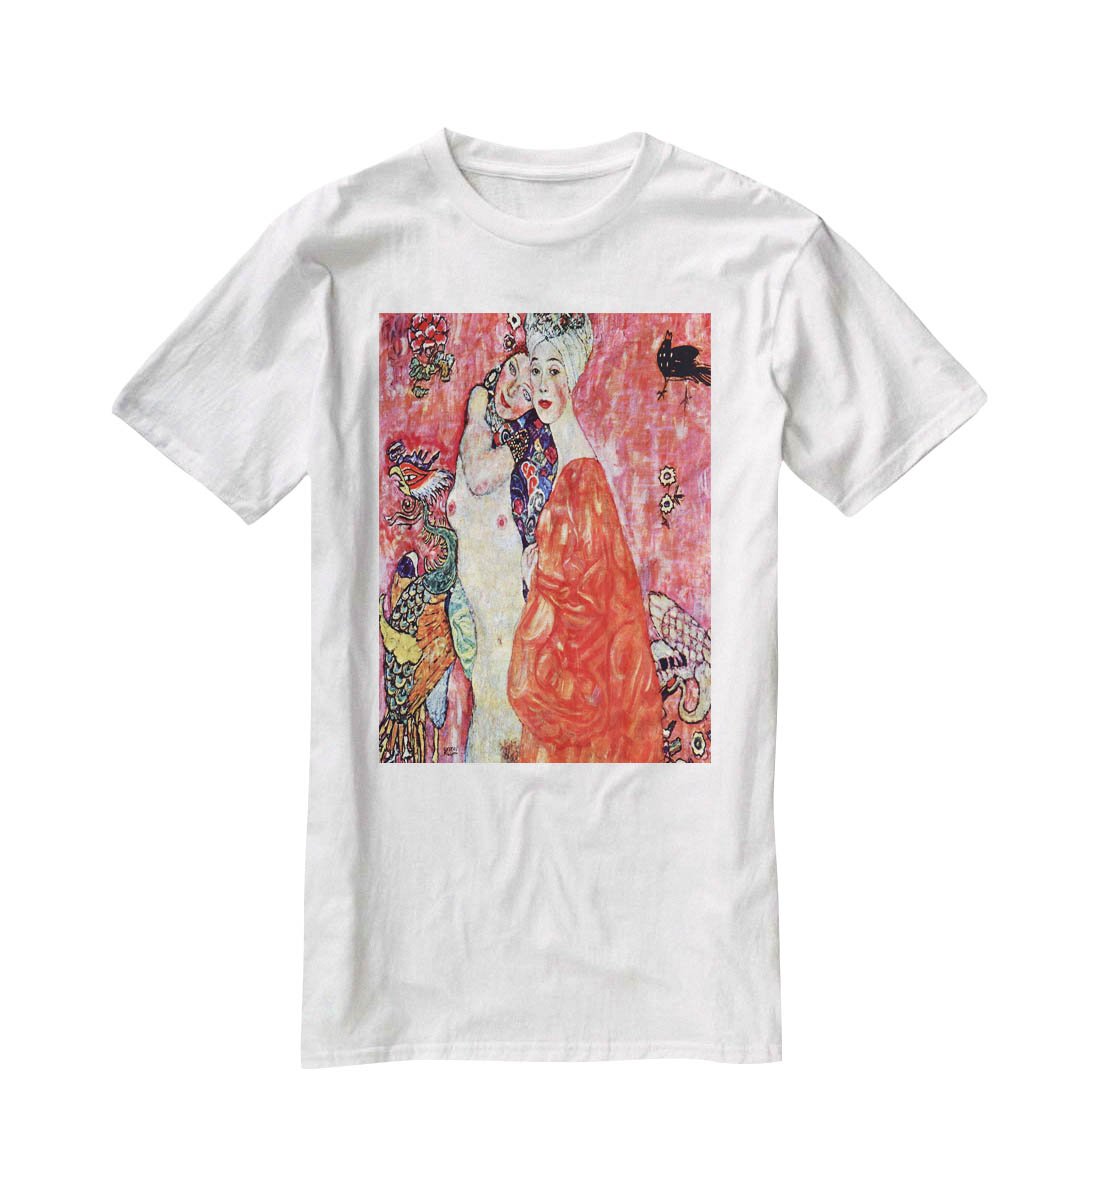 The girlfriends by Klimt T-Shirt - Canvas Art Rocks - 5